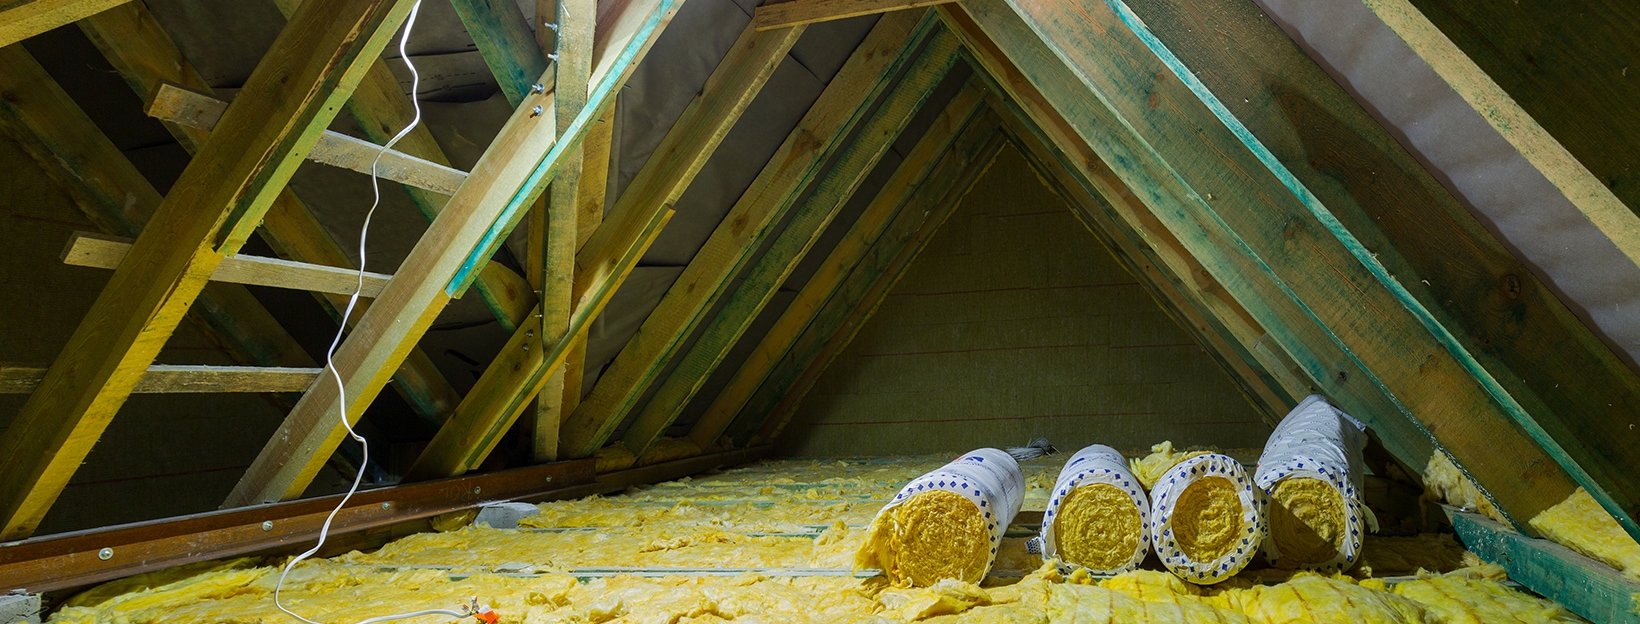 loft insulation repair uk